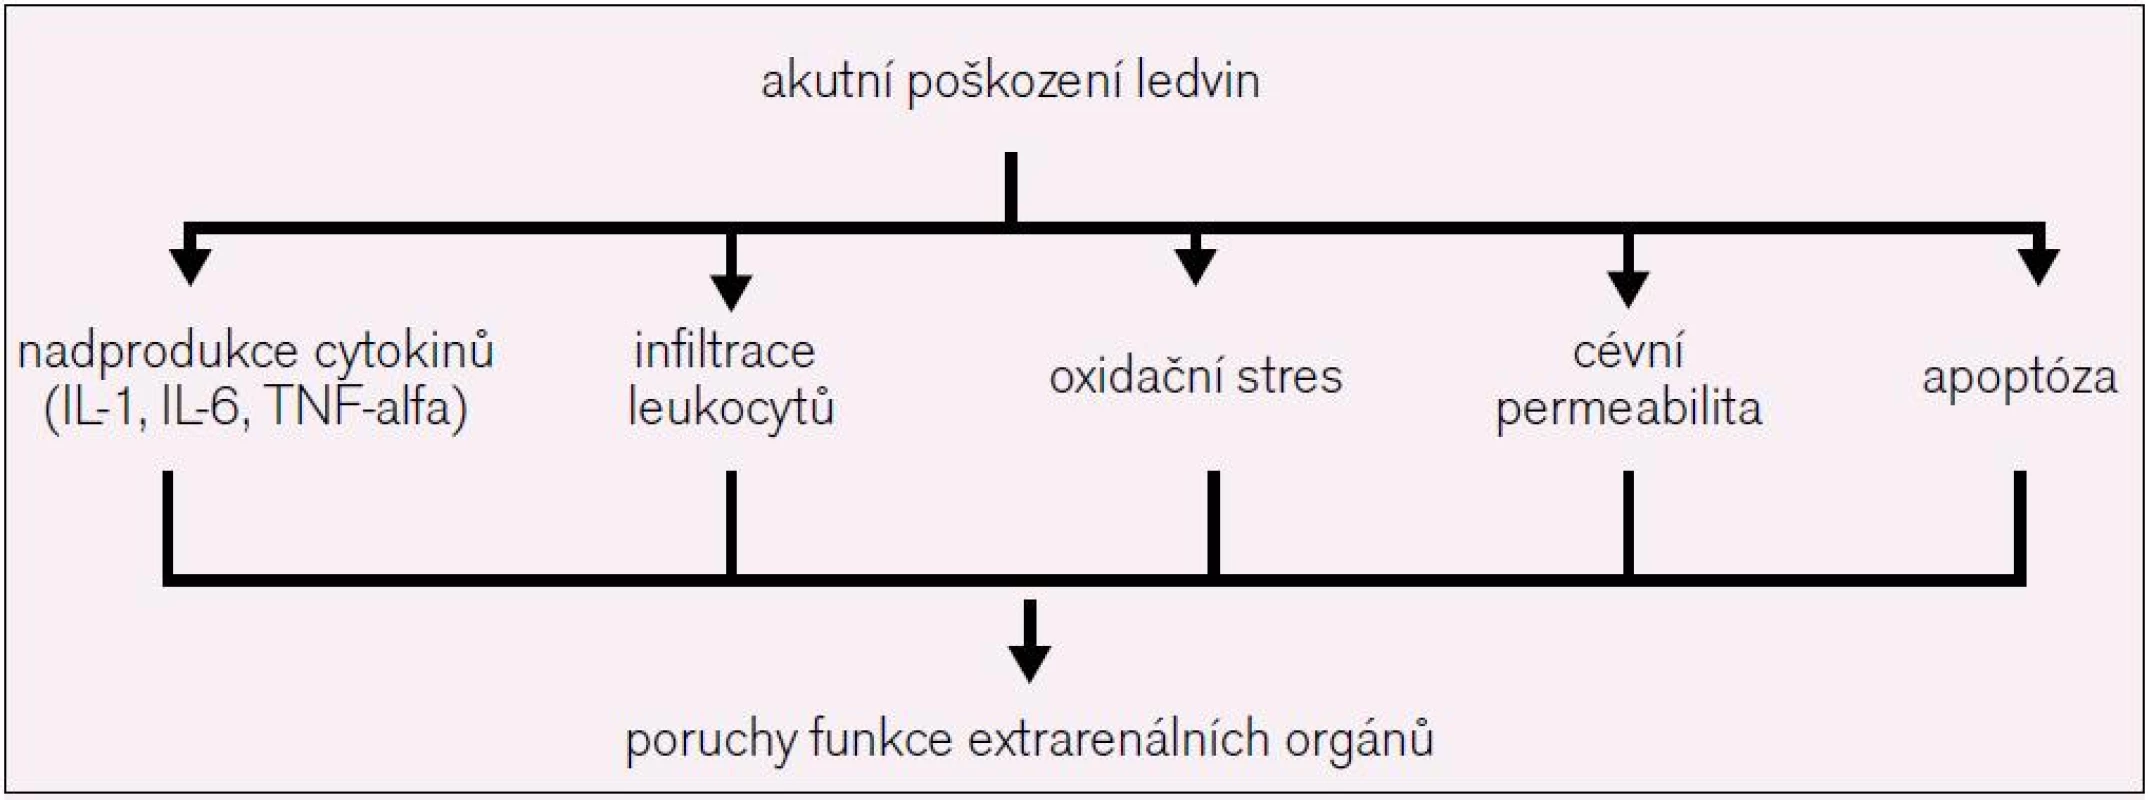 Mechanizmy, kterými AKI ovlivňuje funkci vzdálených orgánů.